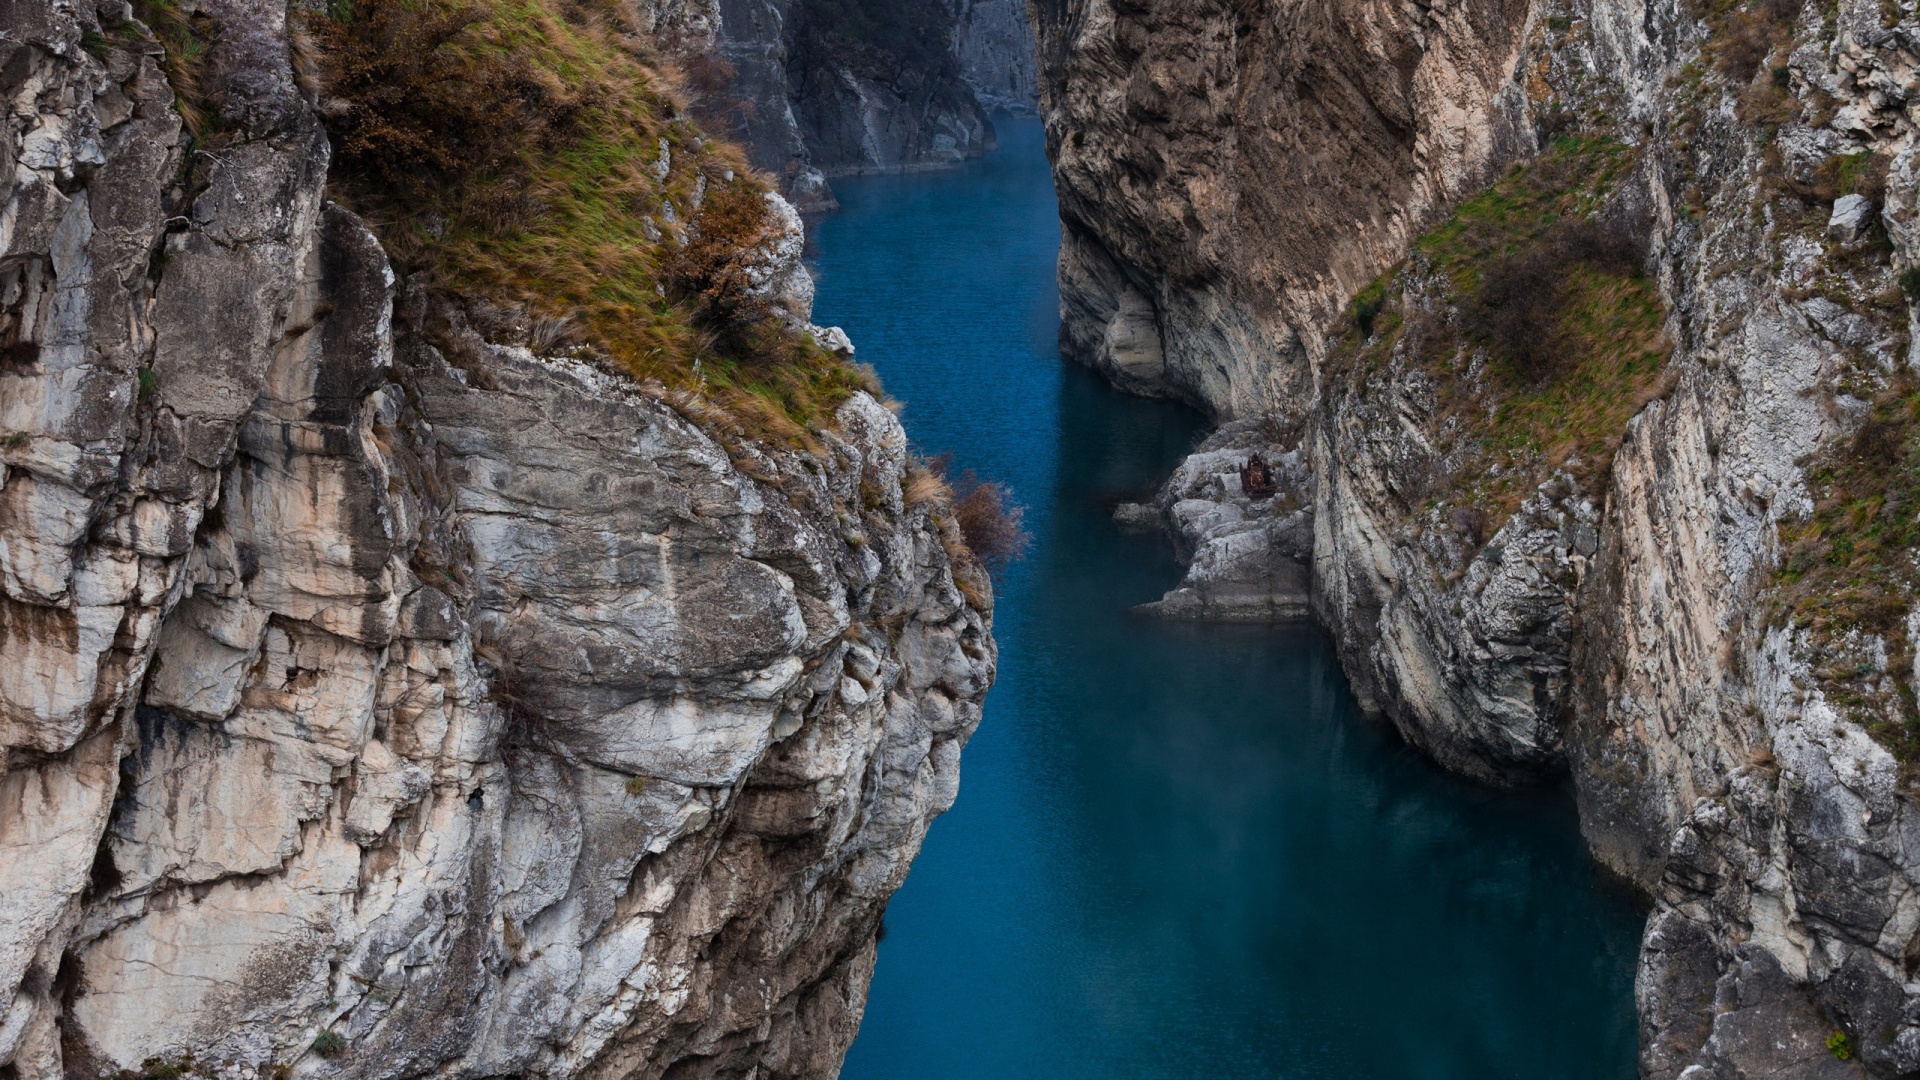 والپیپر تنگه ای با صخره های غول پیکر و رودخانه ای بین آن ها برای شبکه های اجتماعی